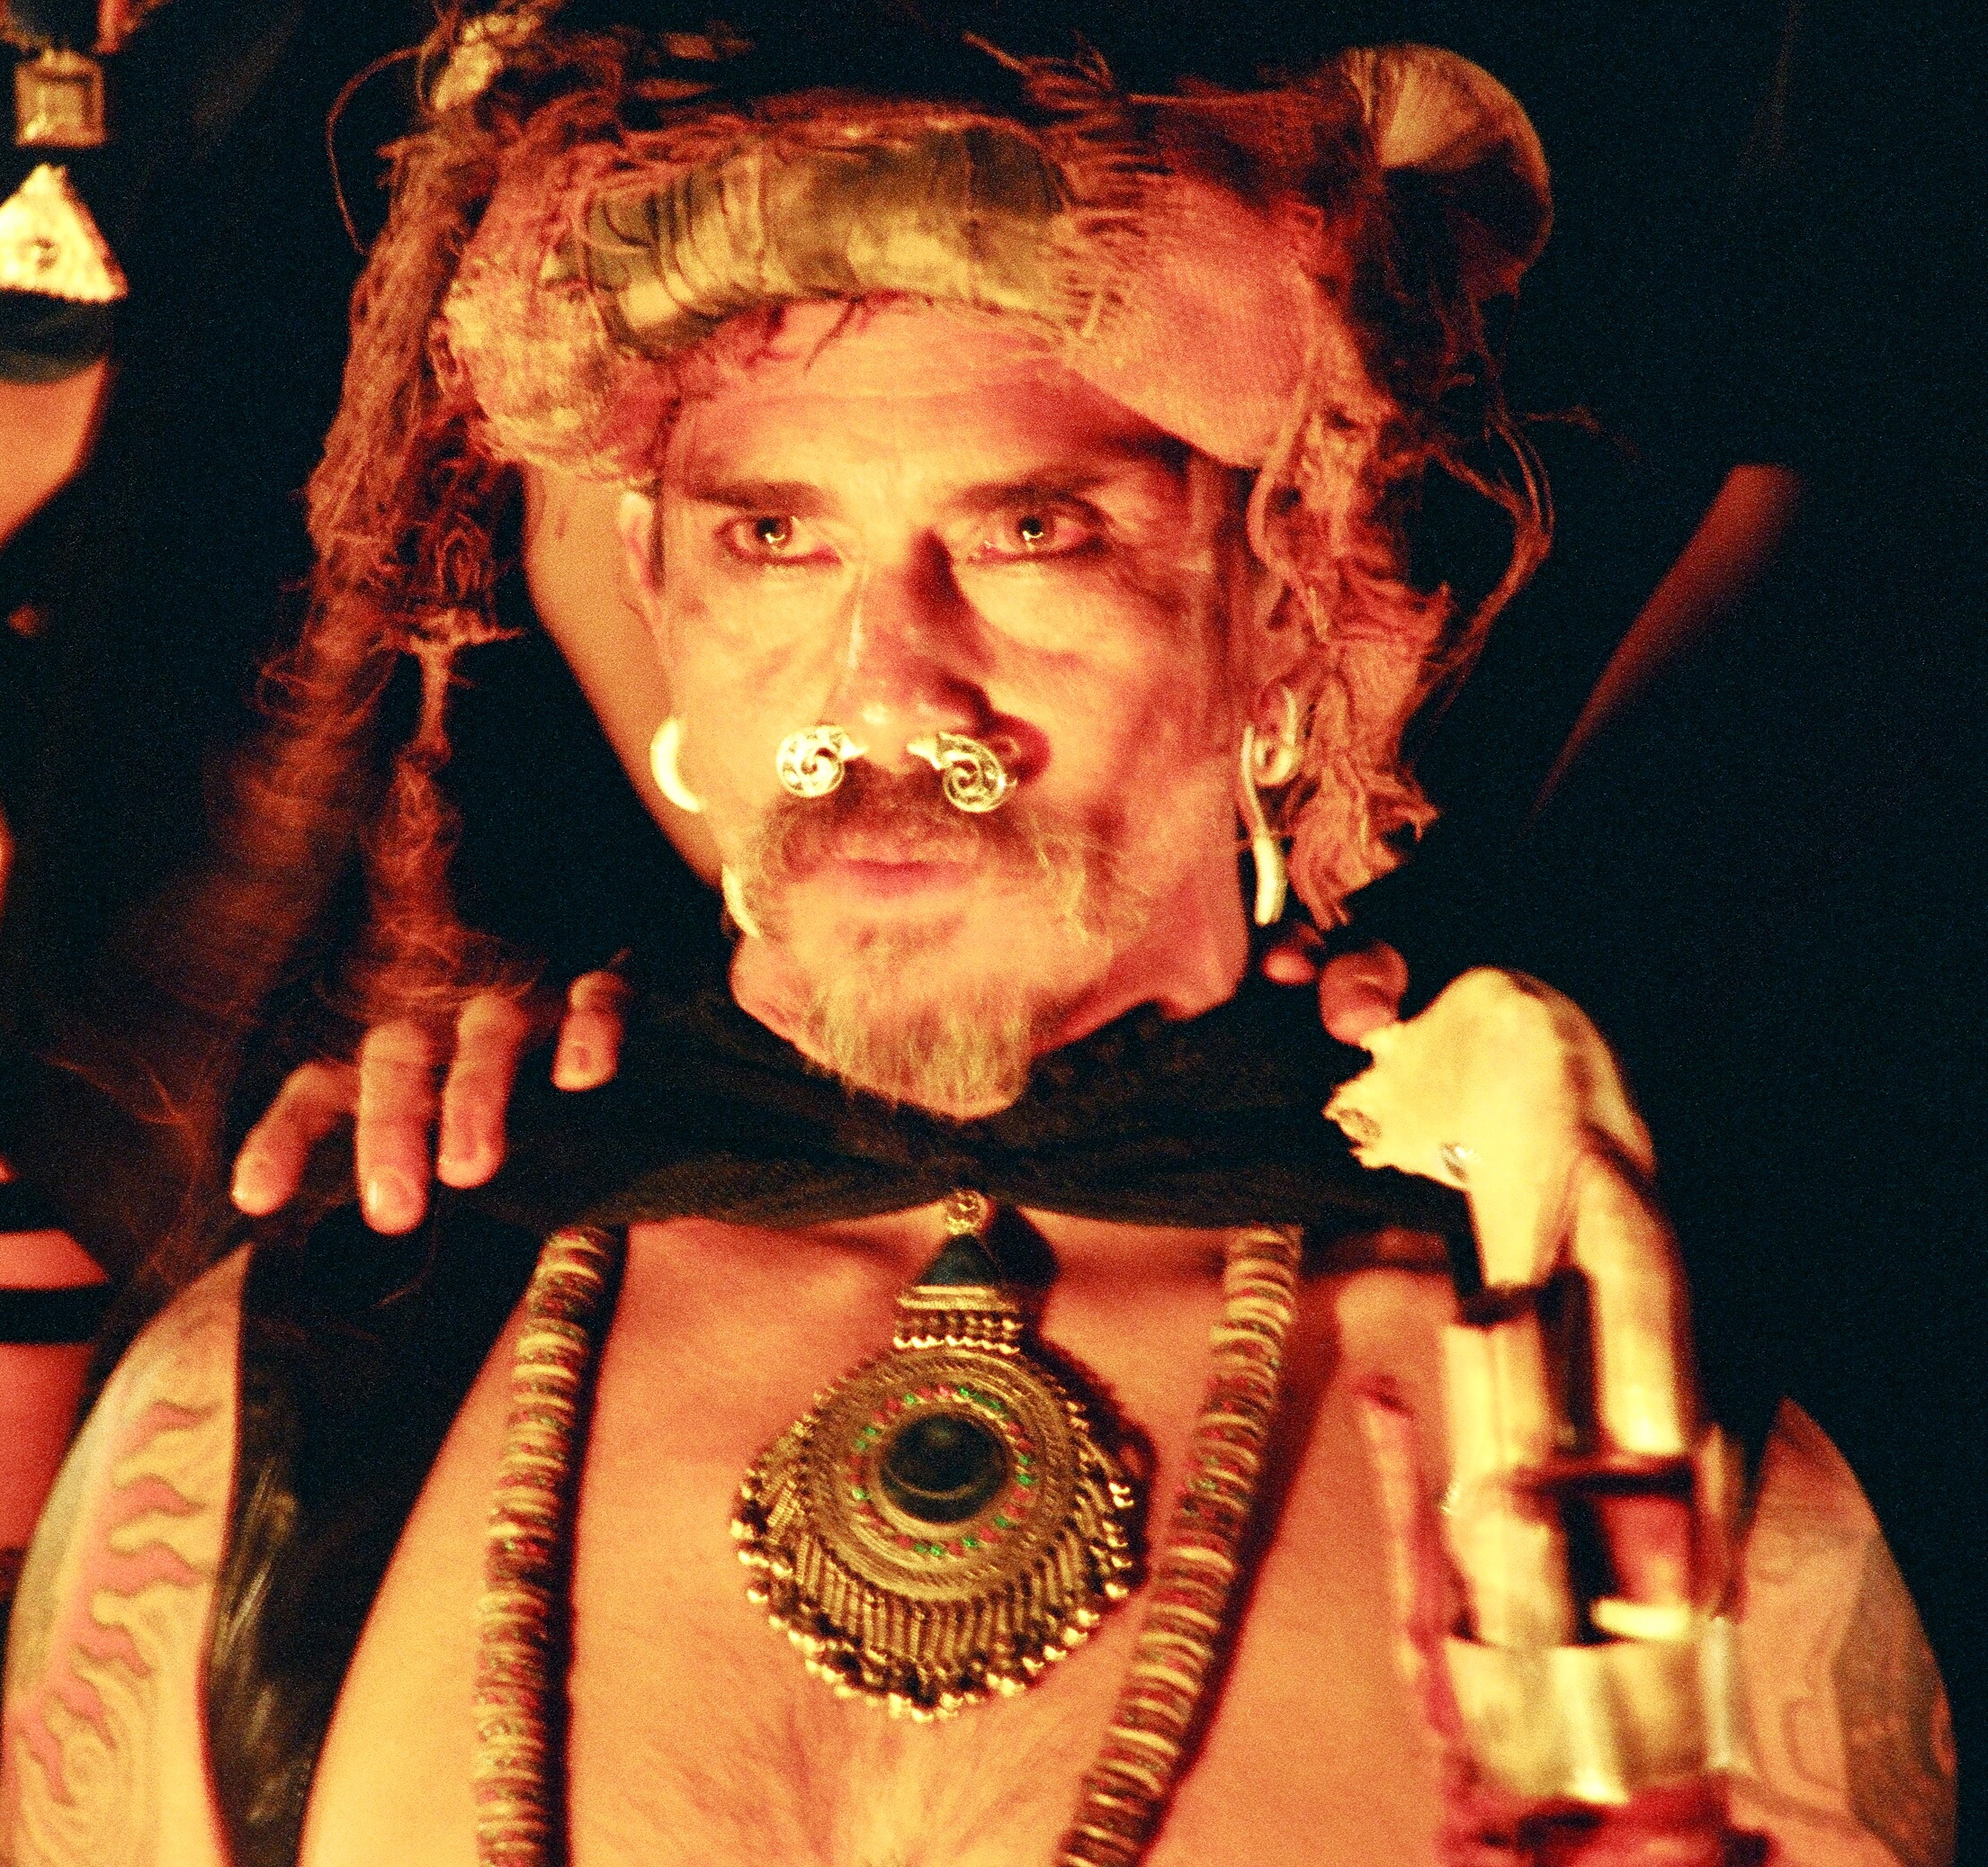 Raoul Trujillo as Uruk on the set of Urundun